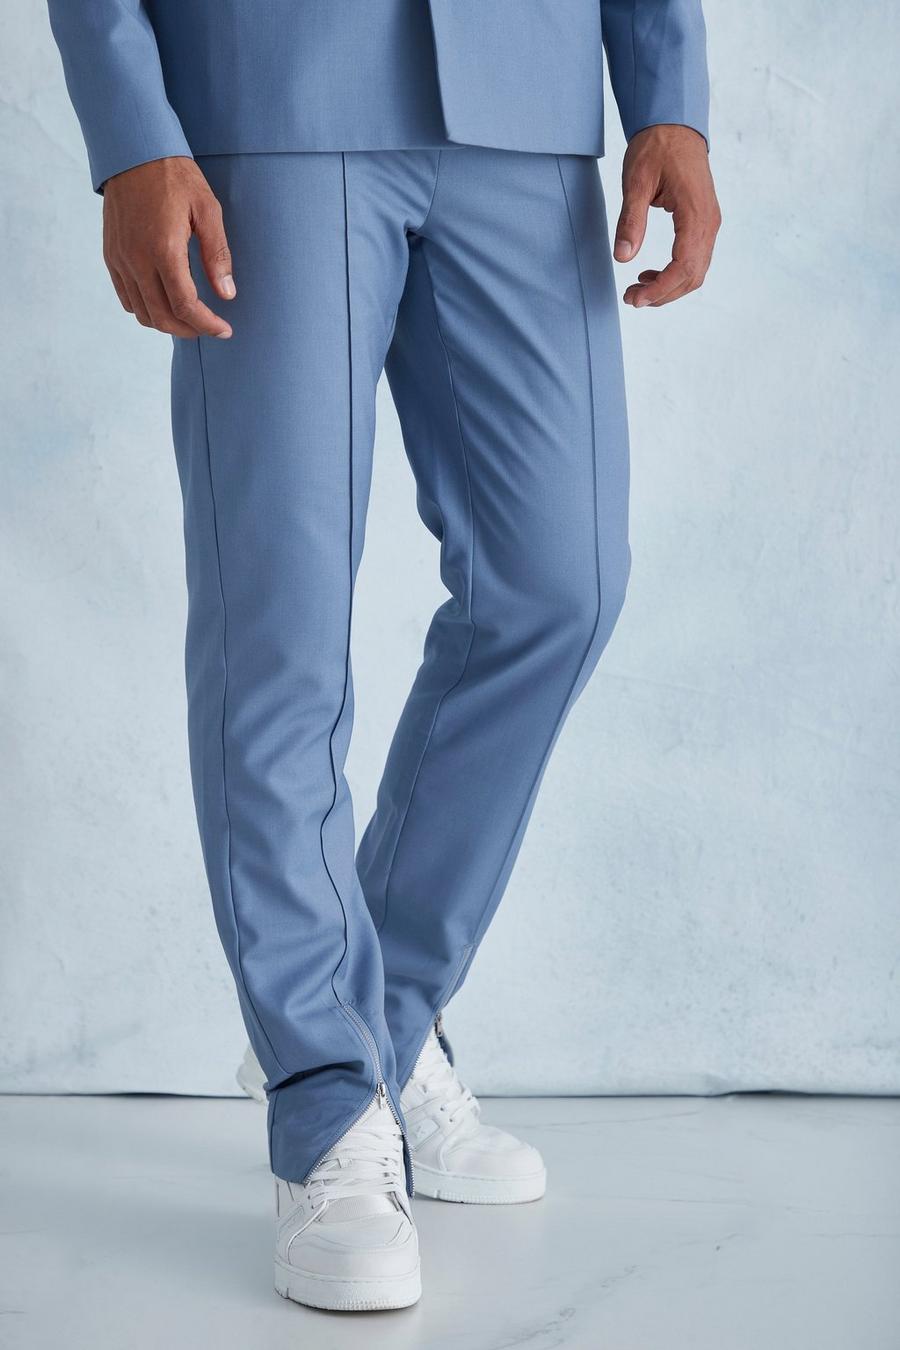 Pantalon droit zippé, Dusty blue bleu